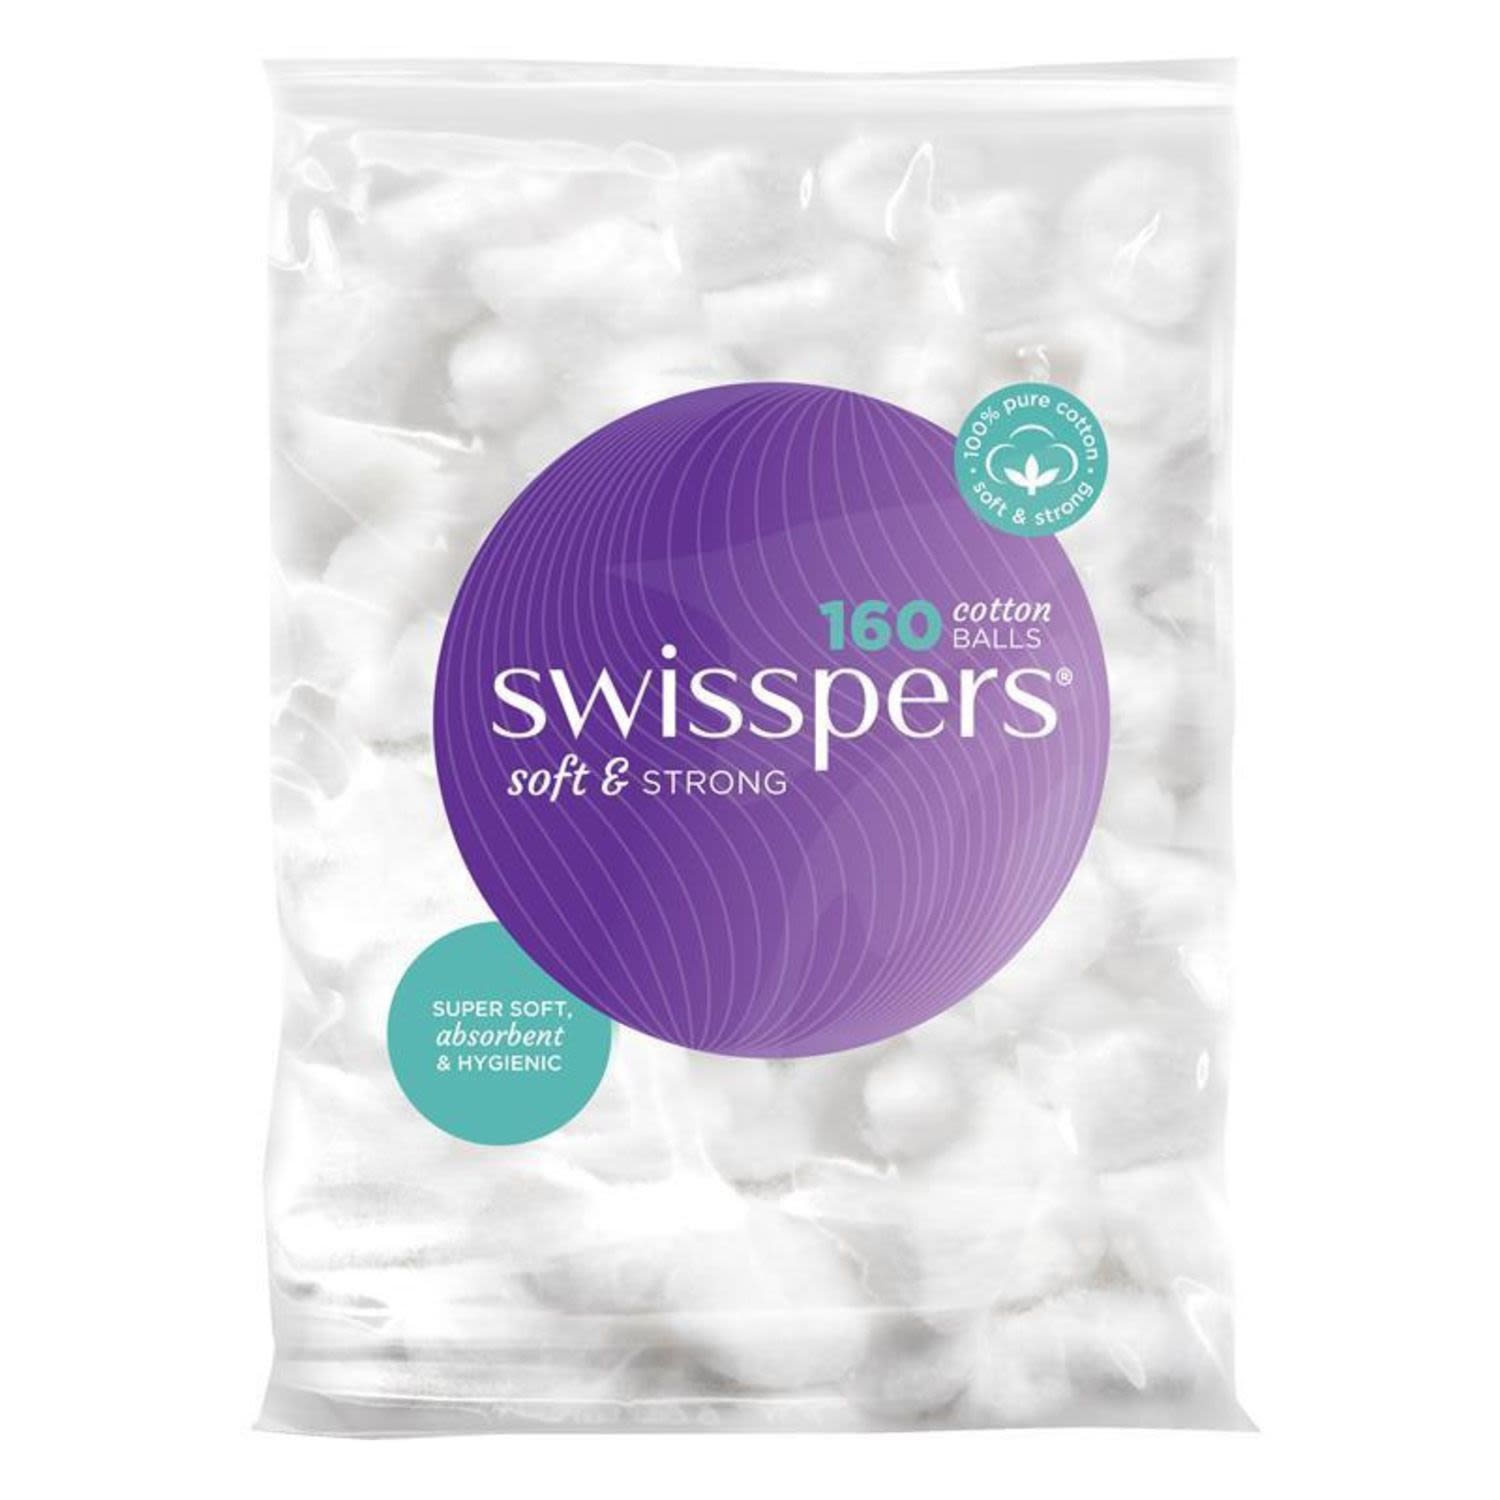 Swisspers Cotton Balls, 160 Each